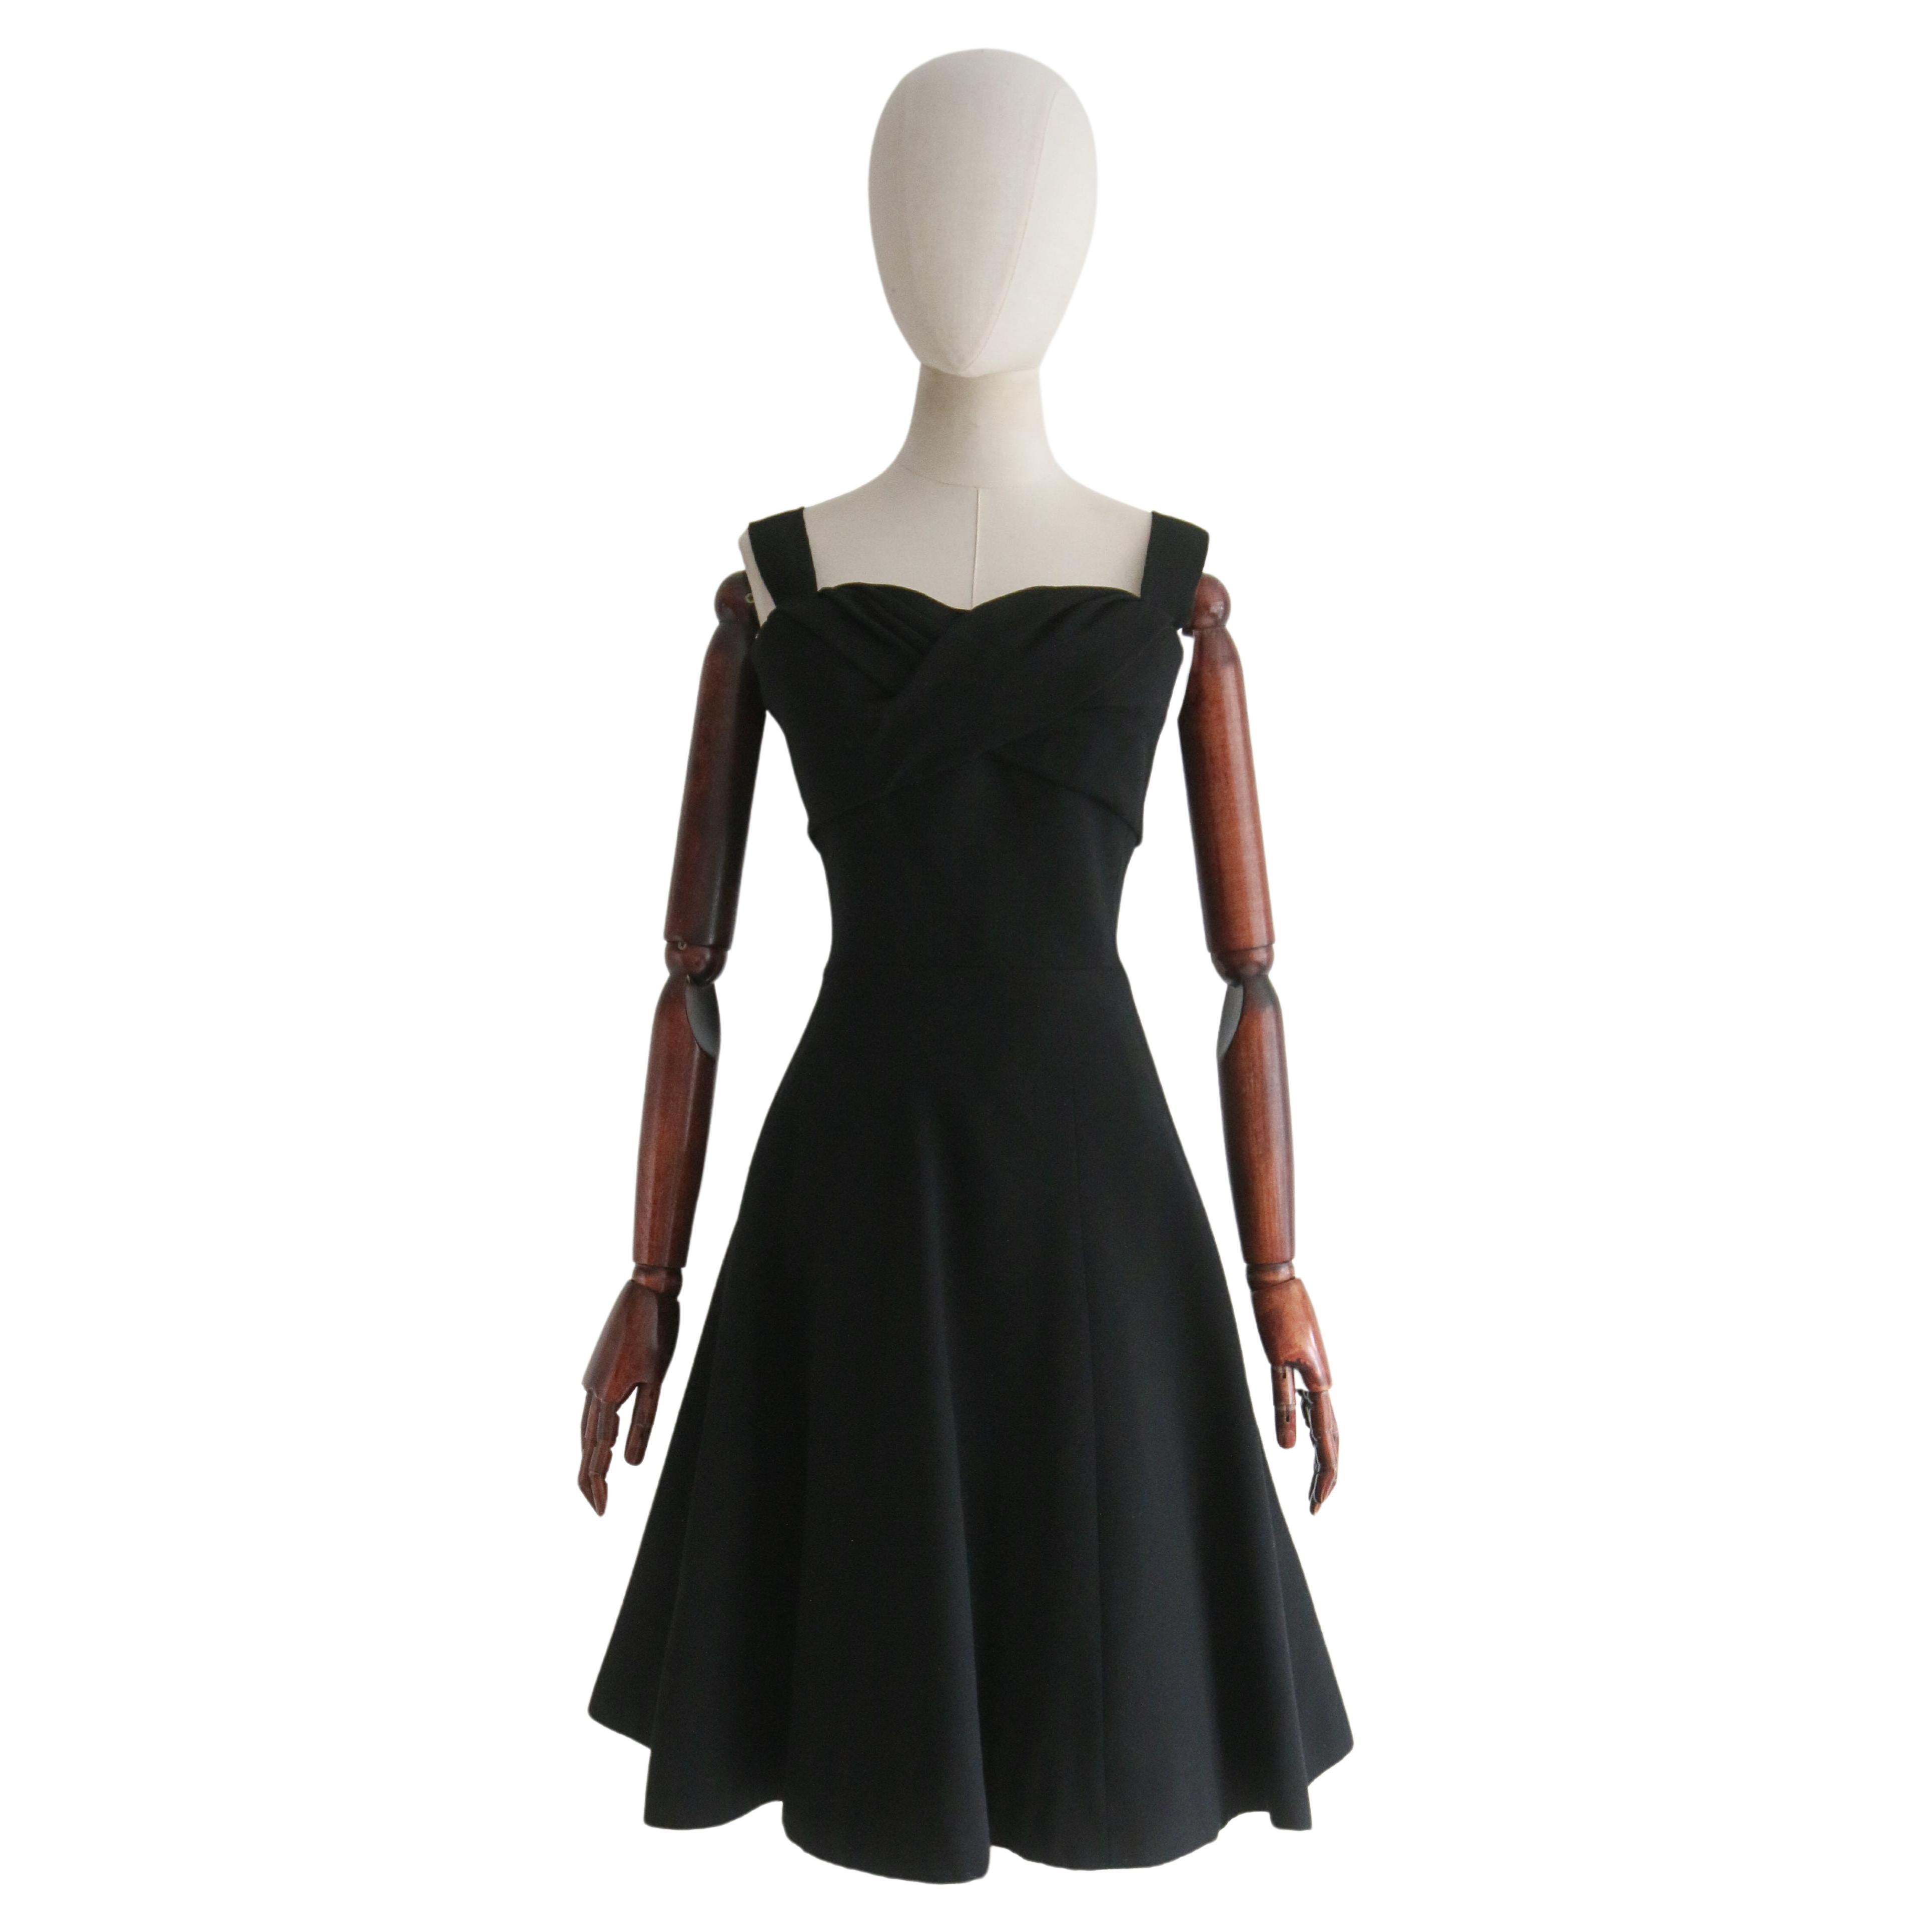  Schwarzes Christian Dior Kleid aus den späten 1950er Jahren UK 8 US 4